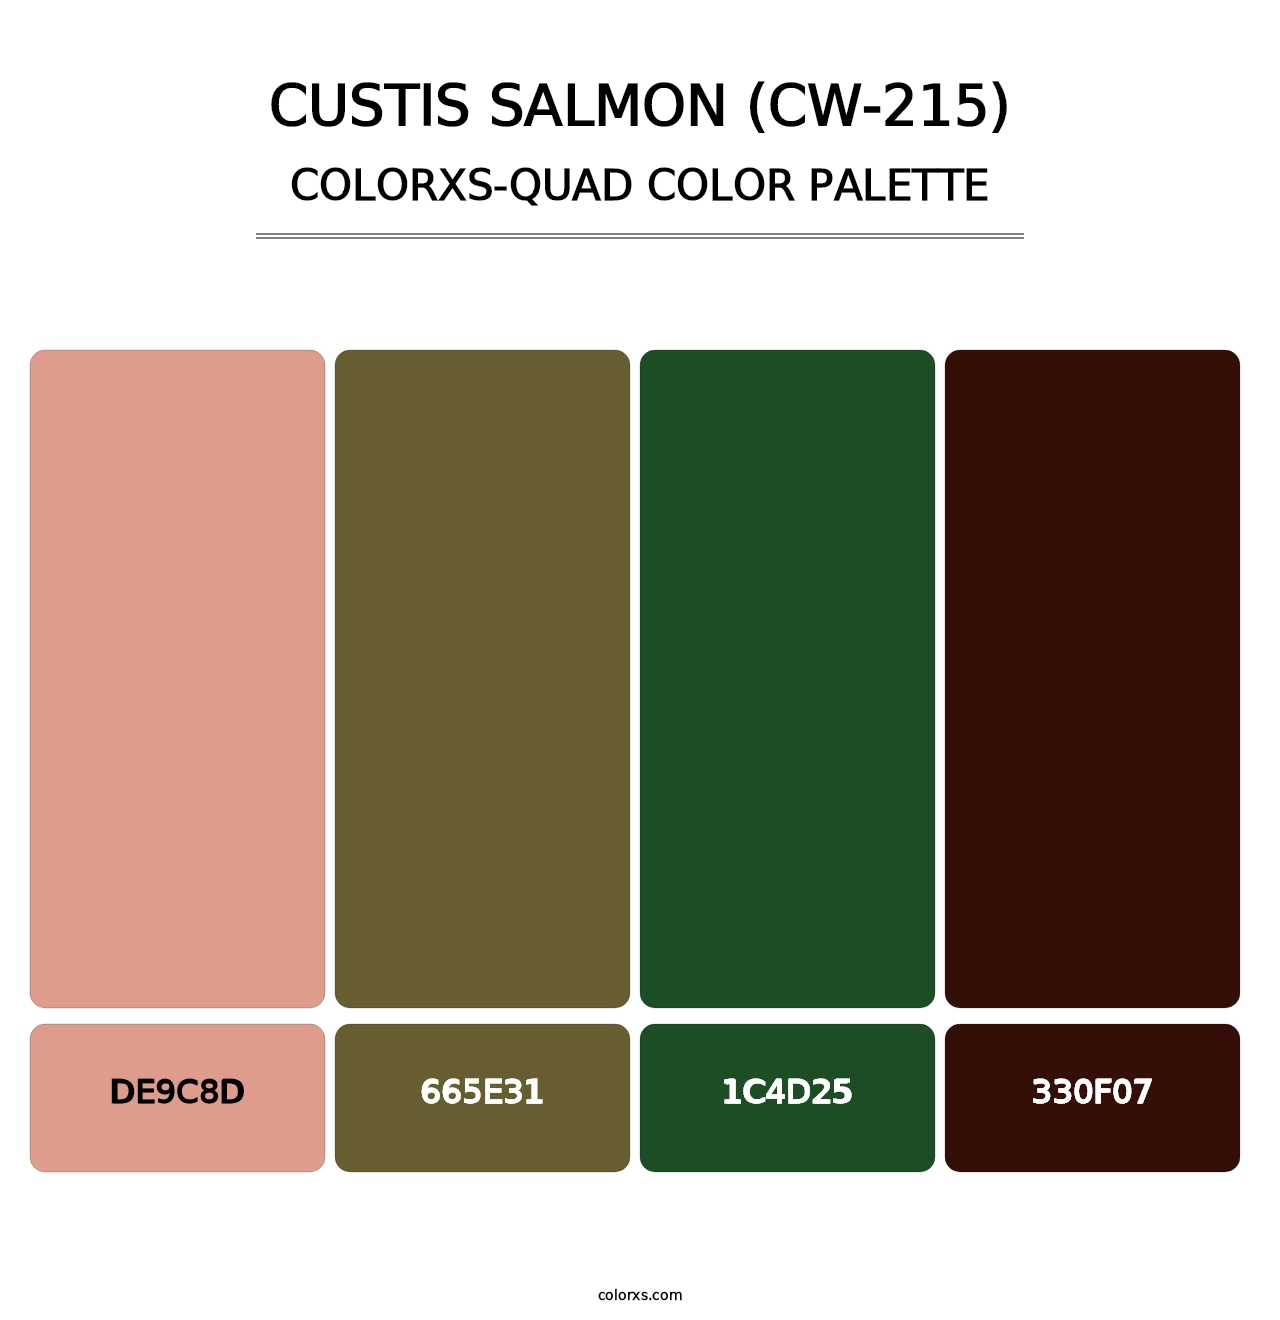 Custis Salmon (CW-215) - Colorxs Quad Palette